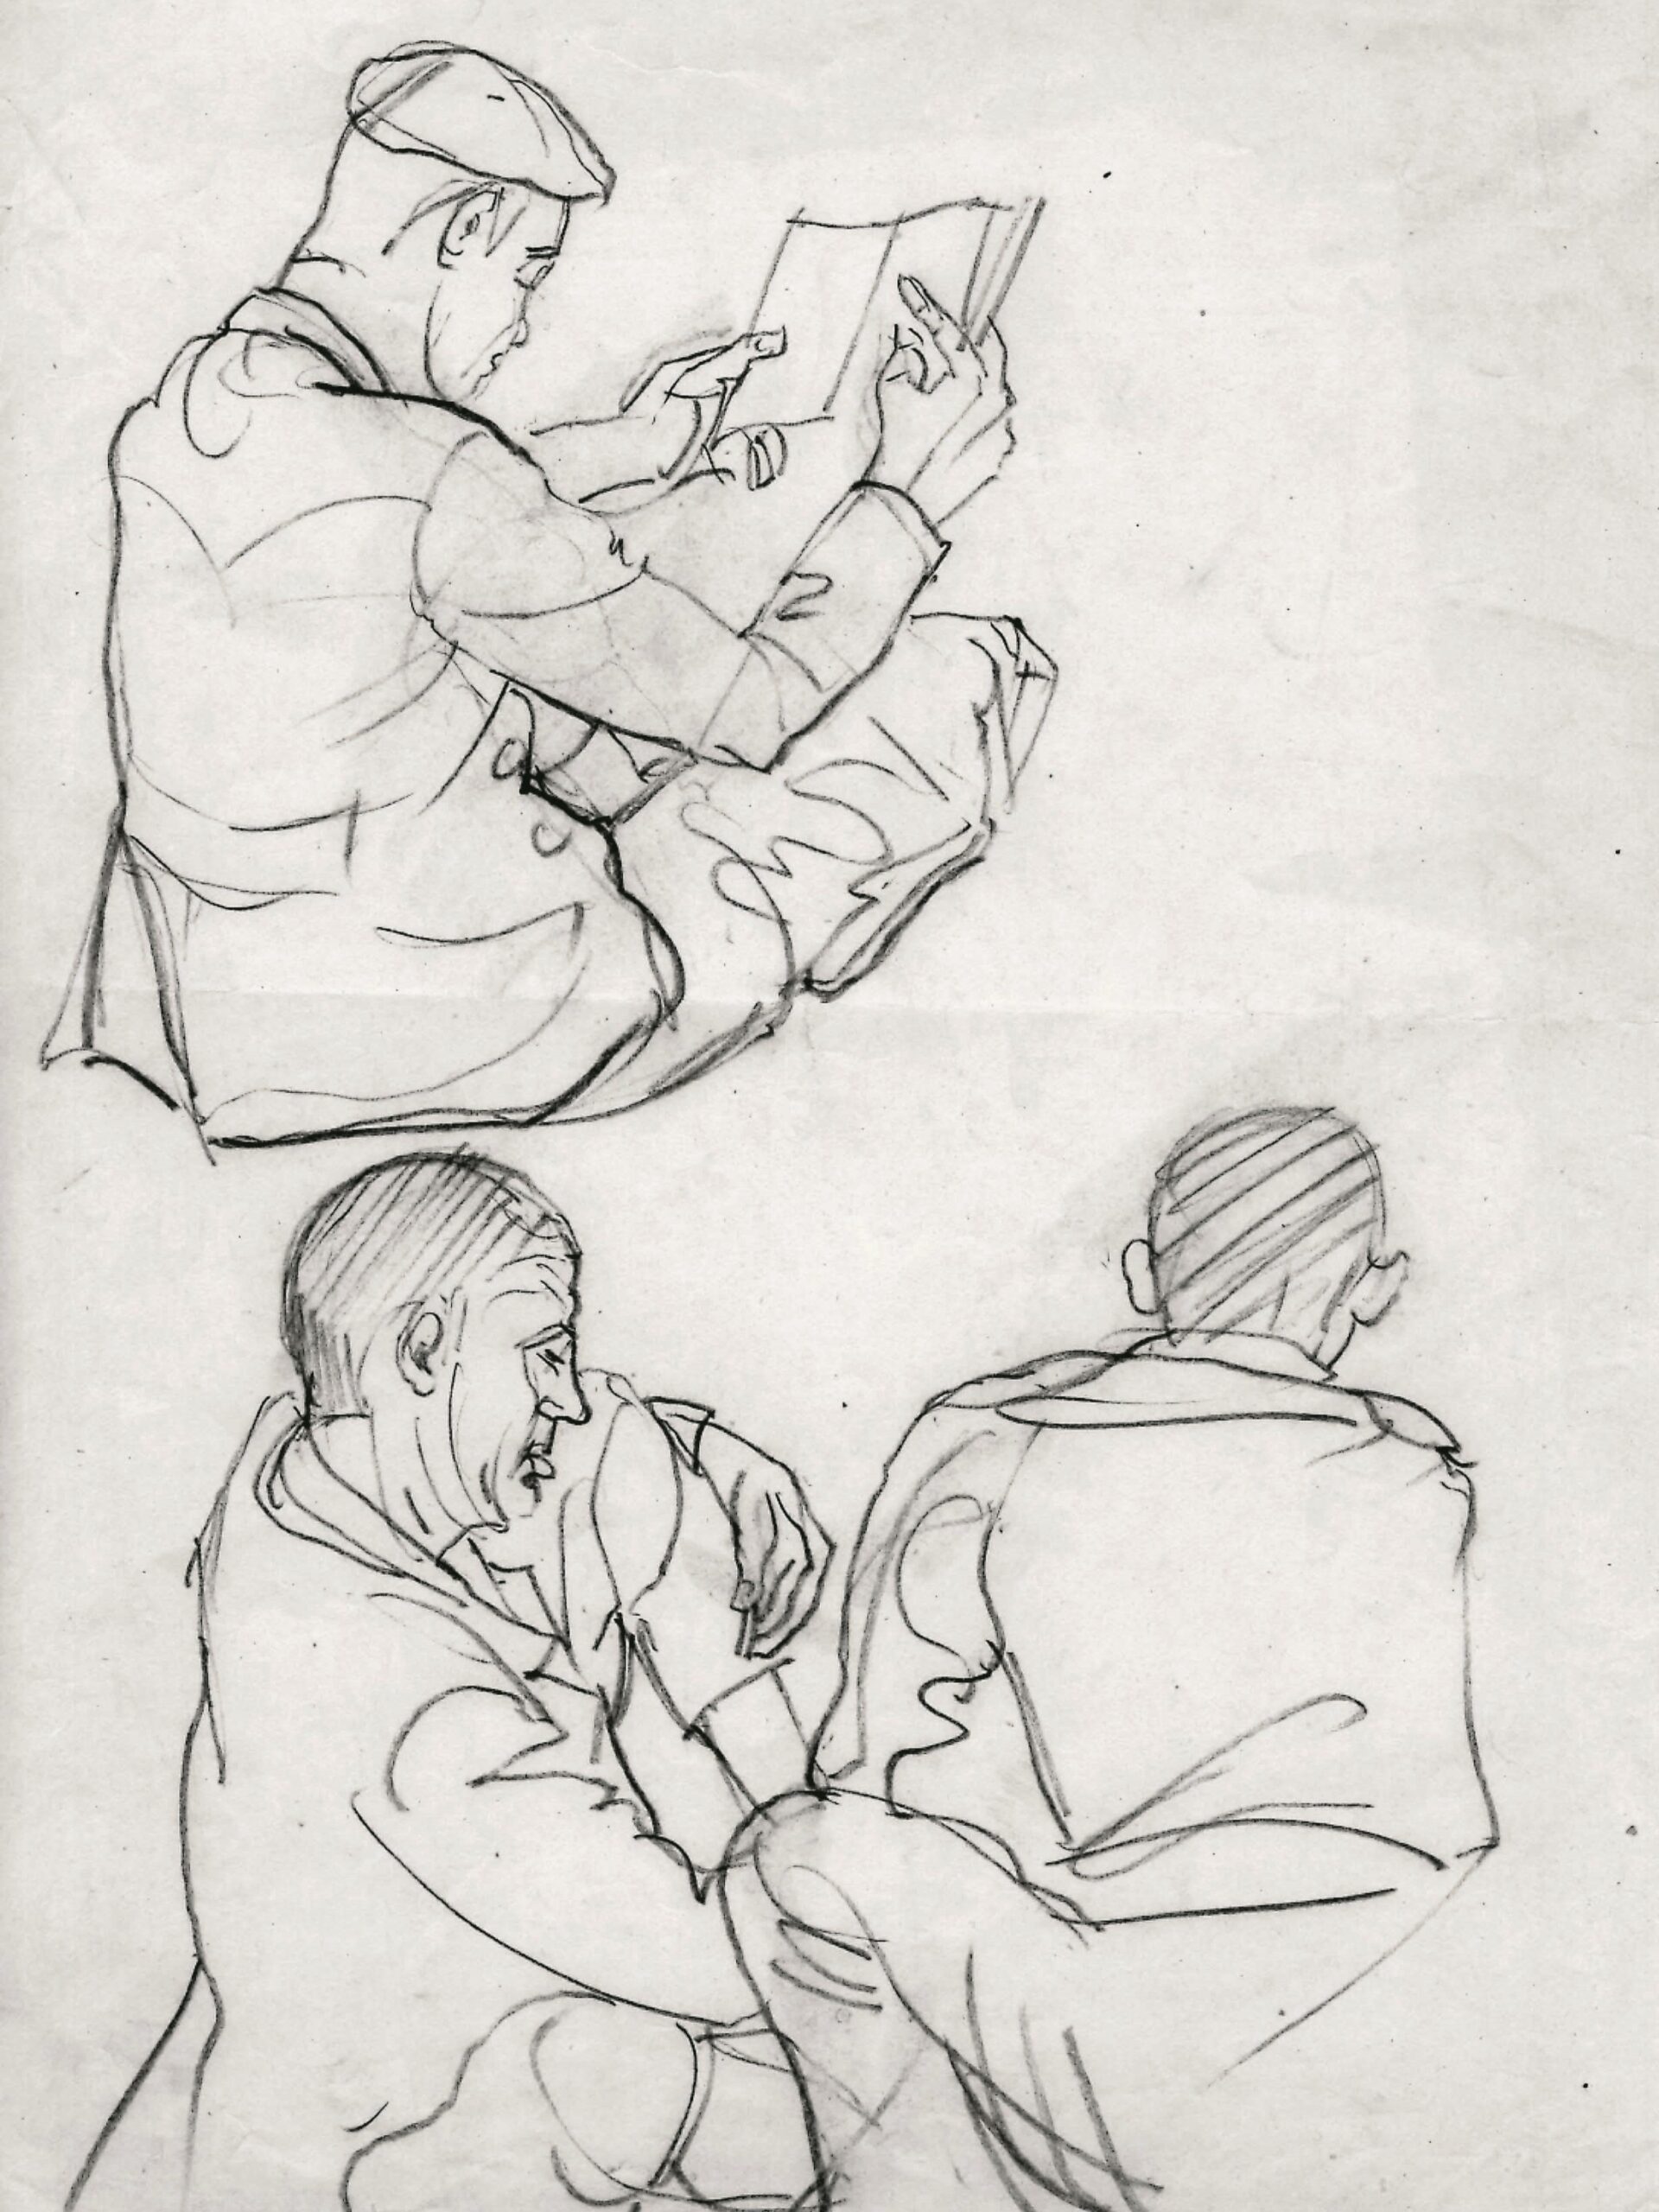 Dibujo de José Manaut titulado Presos, hombre con boina leyendo, dos hombres uno en cuclillas y de espaldas y otro sentado de perfil, 1944. Carboncillo sobre papel.